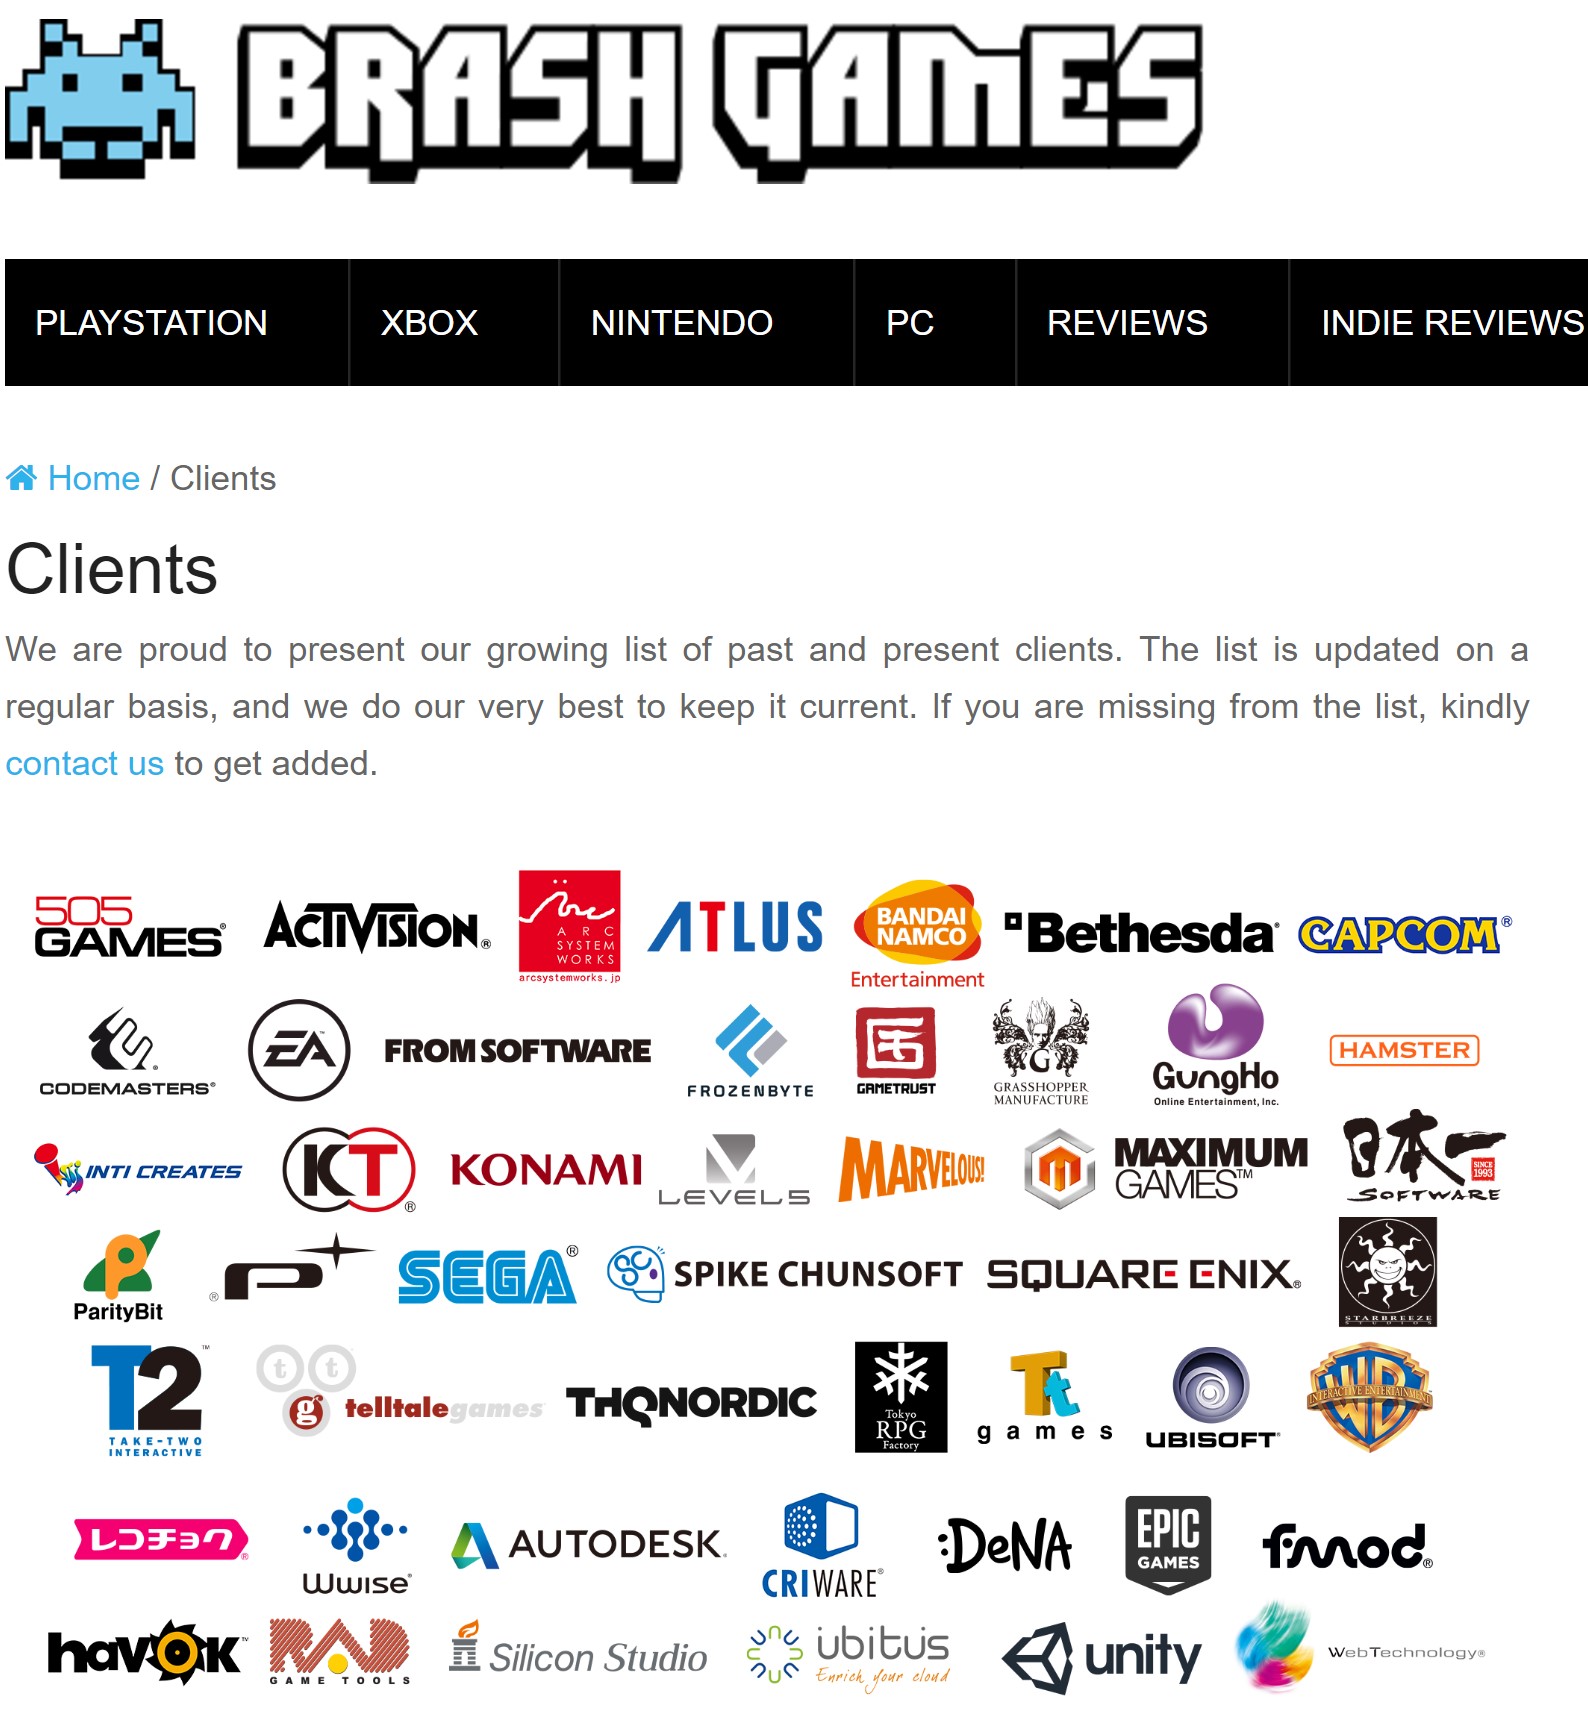 Brash Games, Brash Games Clients